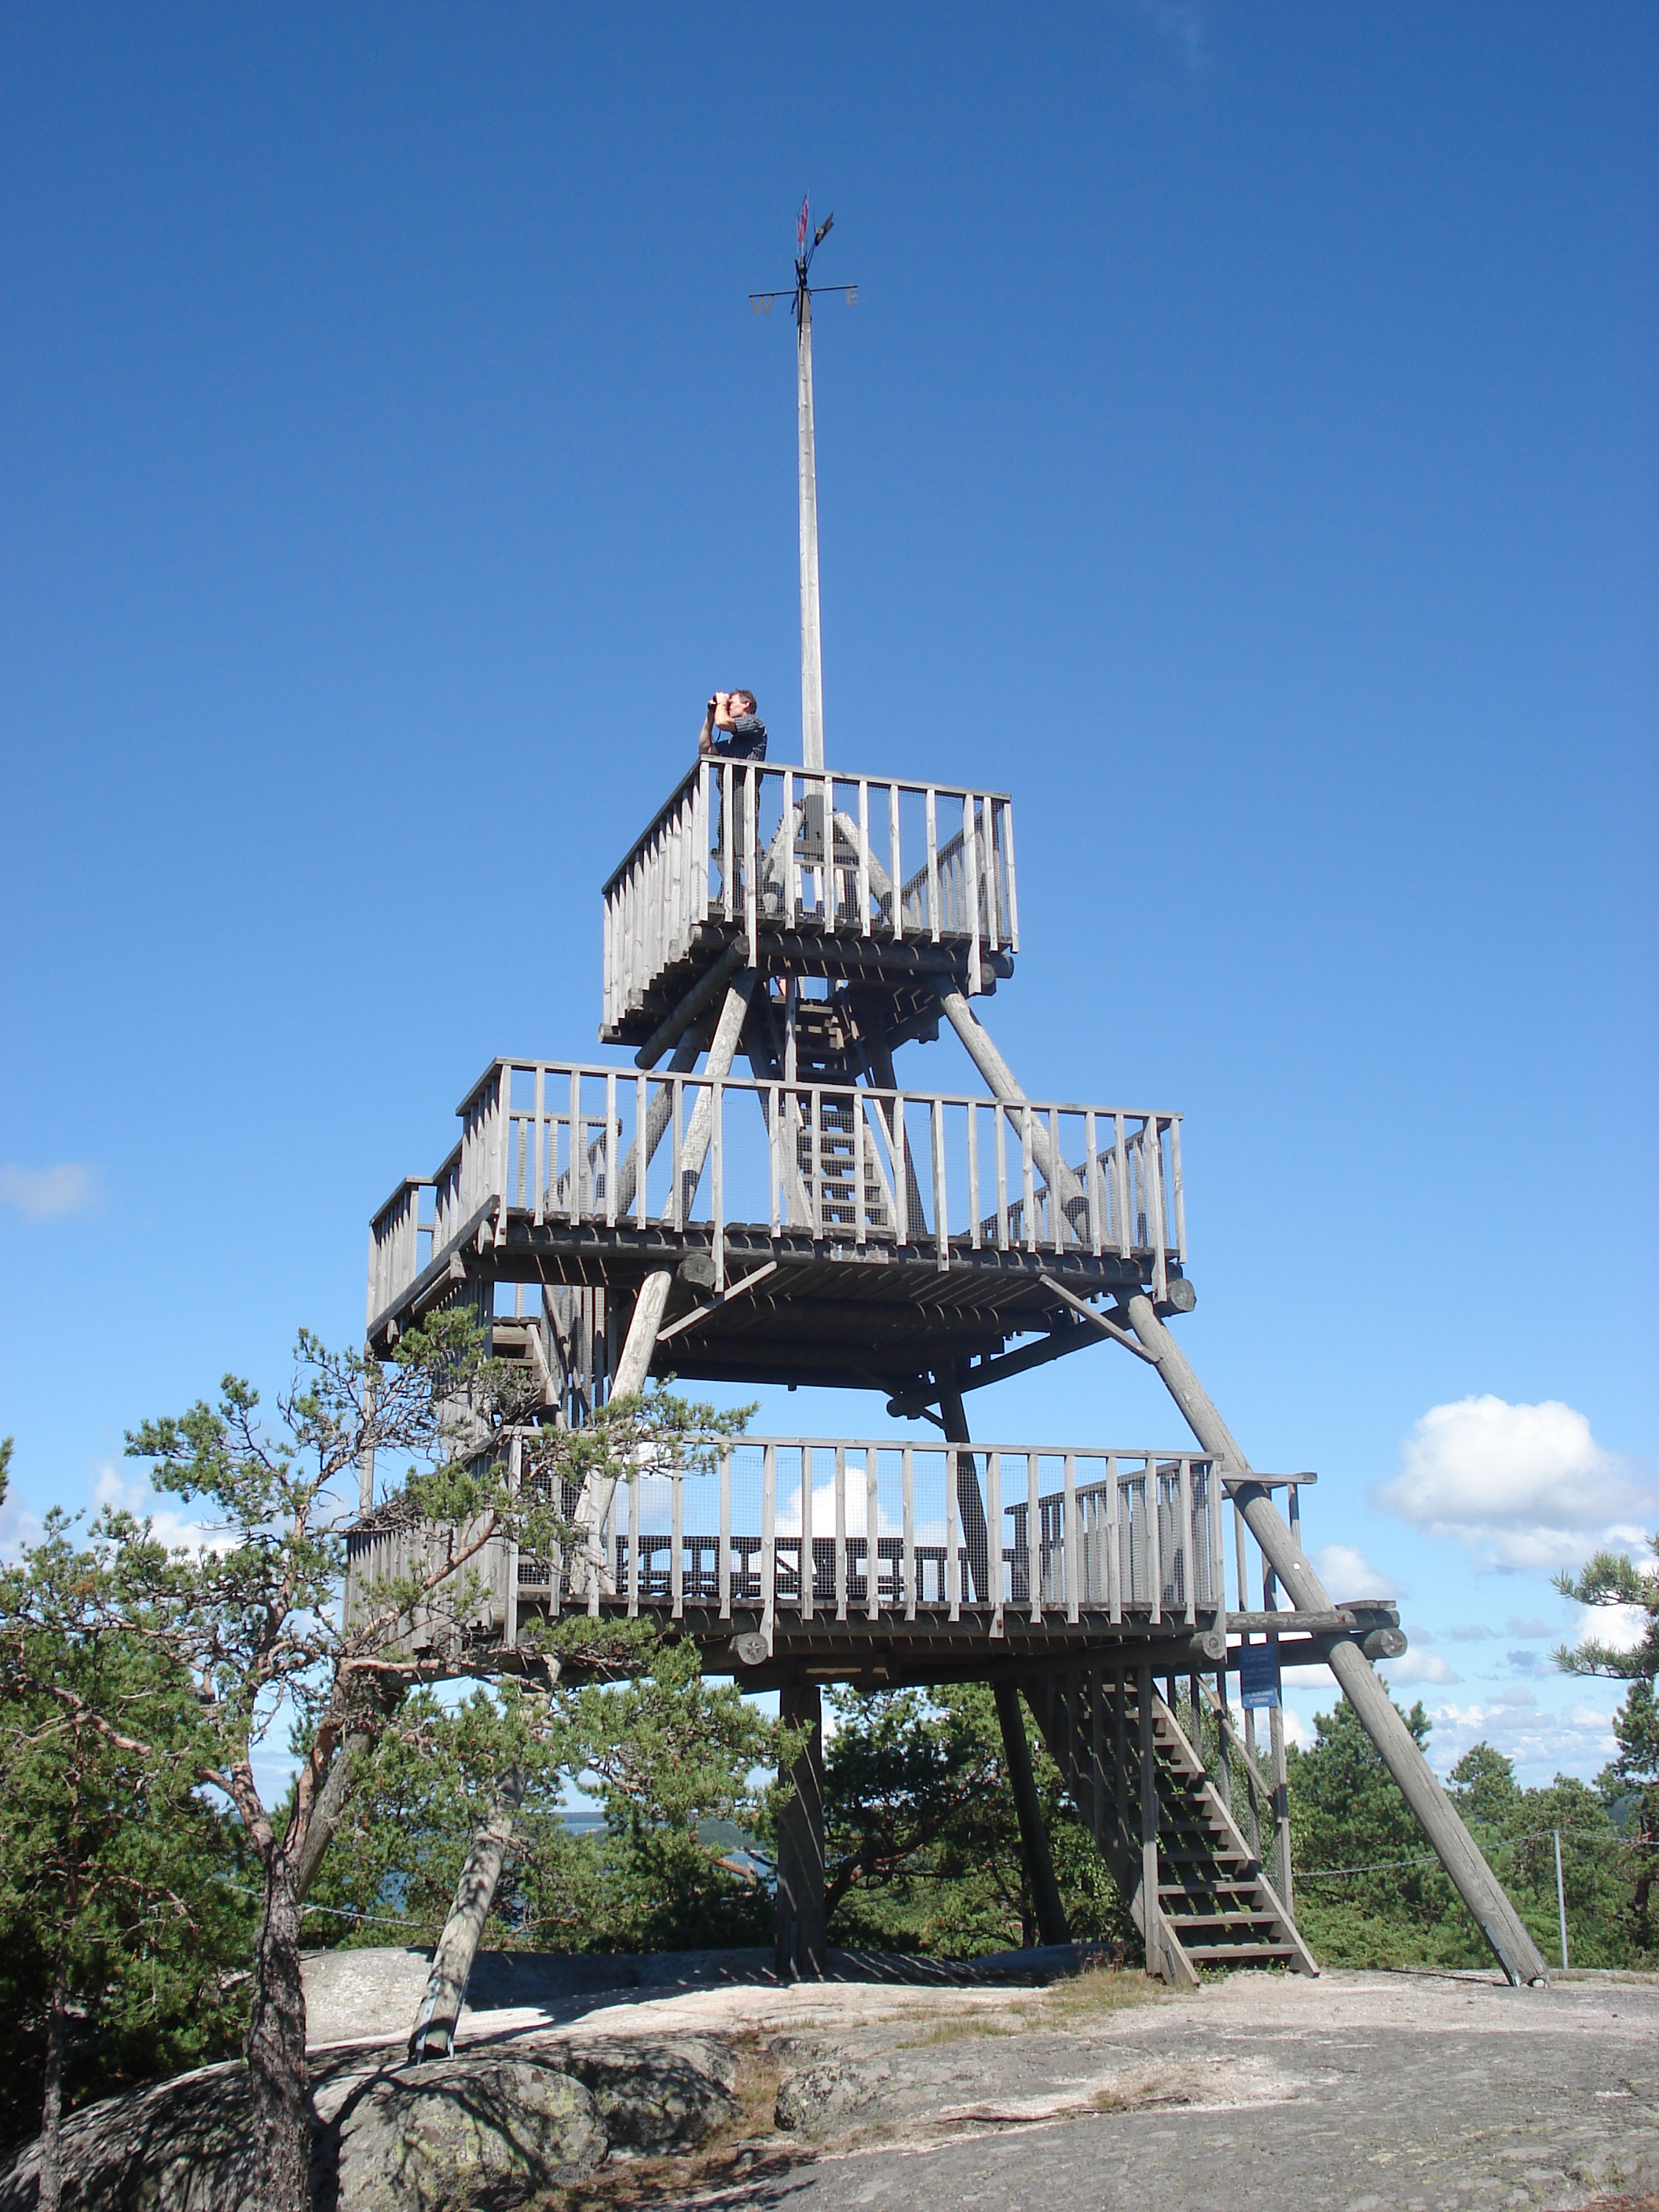 Näkötorni, Borgberg, Houtskari, 21.7.2007